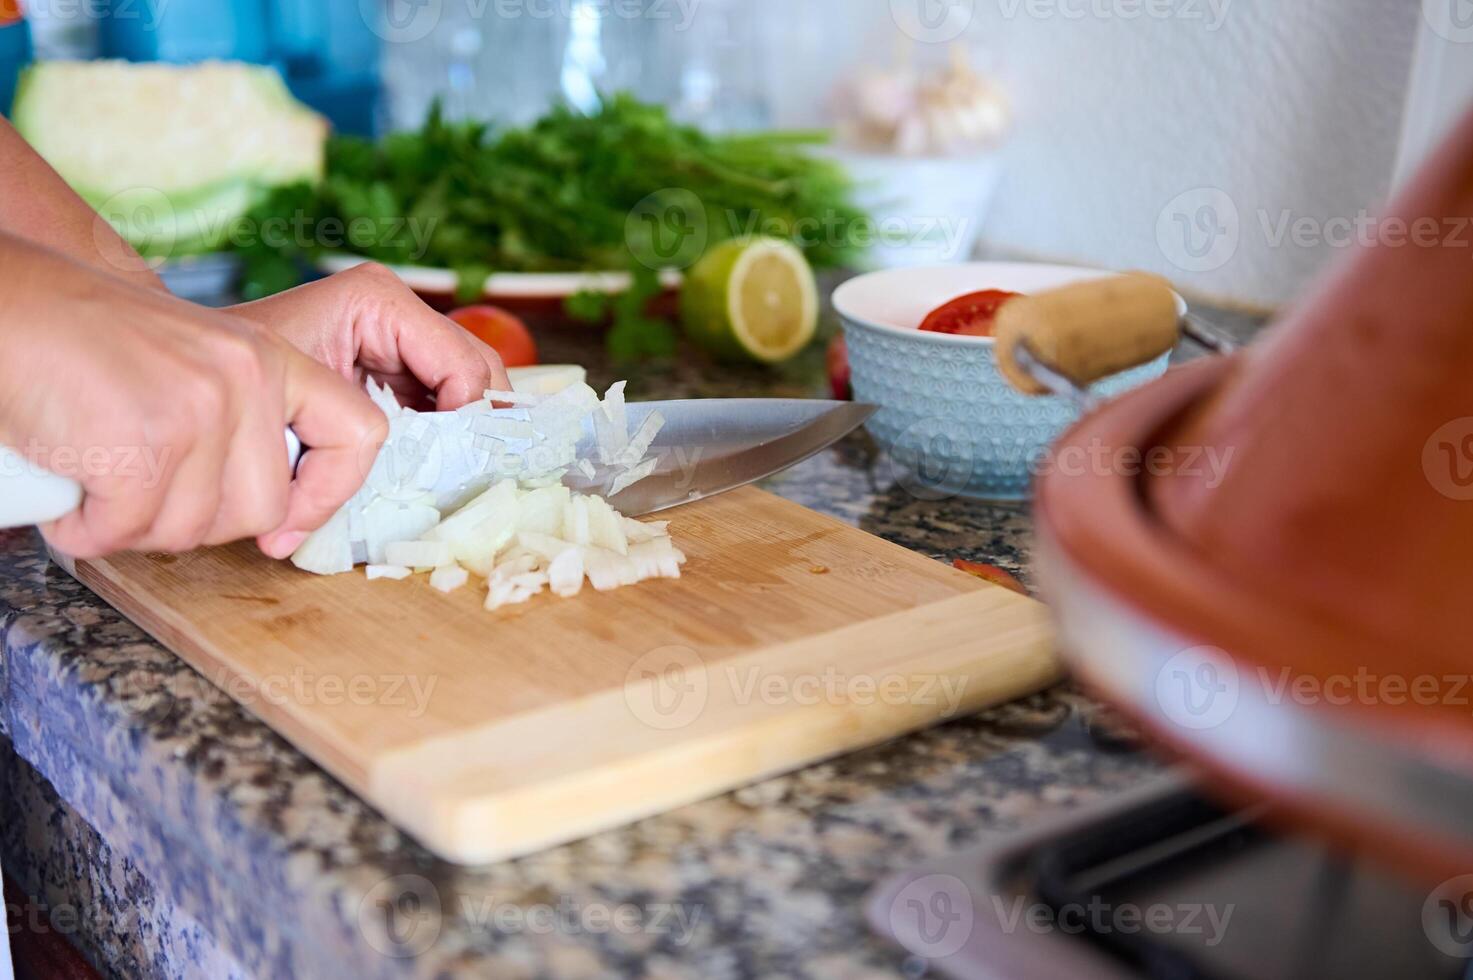 ama de casa manos rebanar y el cortar cebolla en de madera corte junta, preparando un sano ensalada para cena a hogar. foto